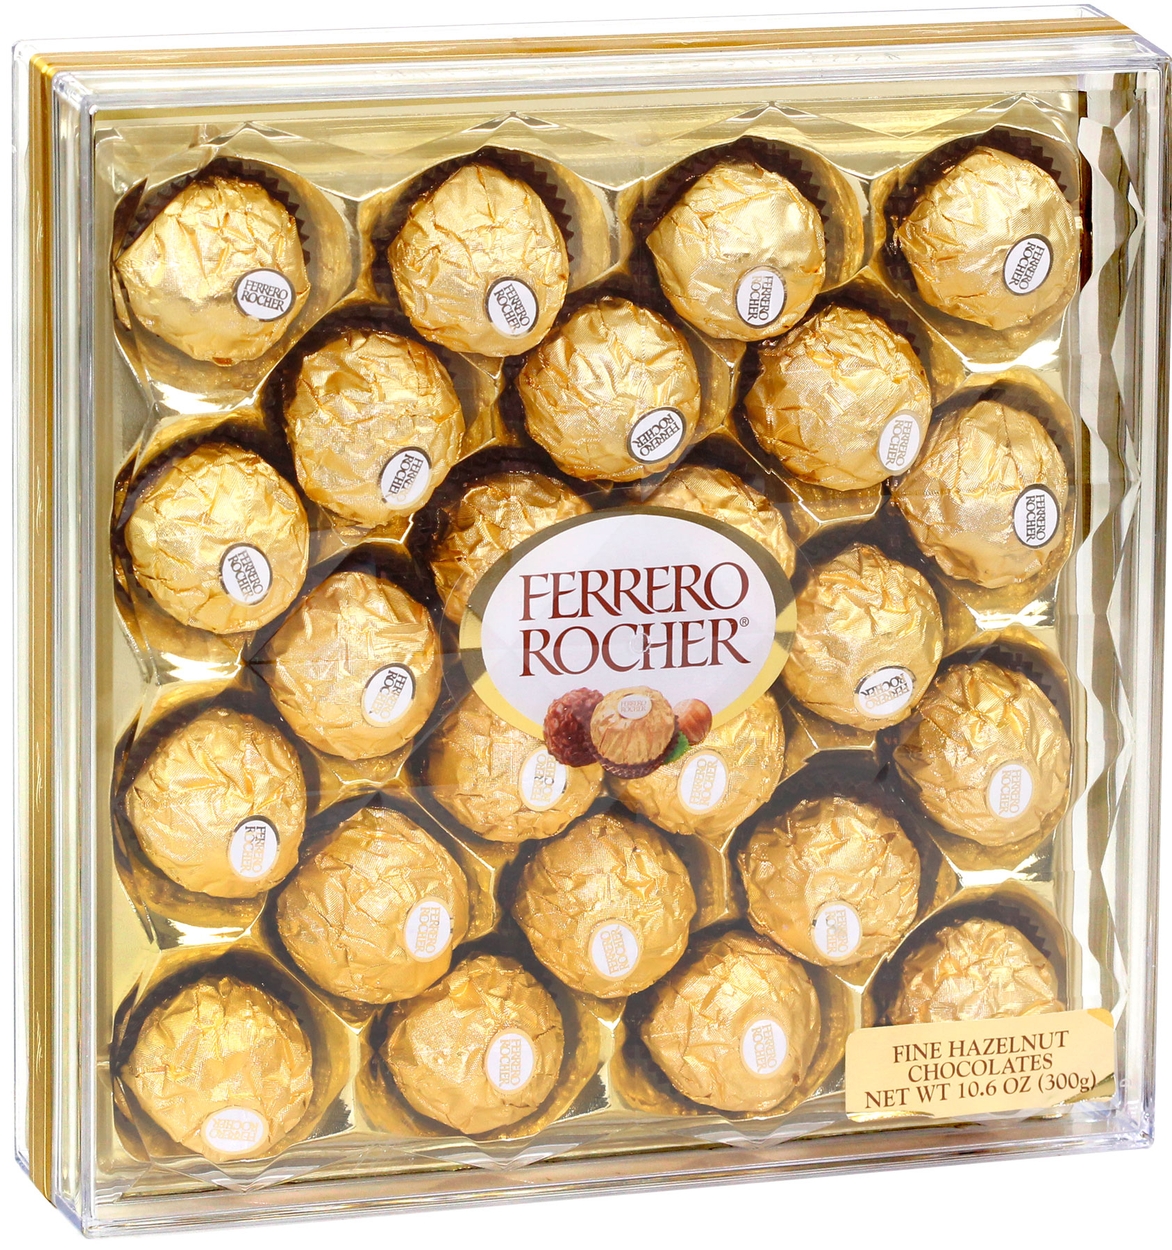 Ferrero Rocher Chocolate Gift Box